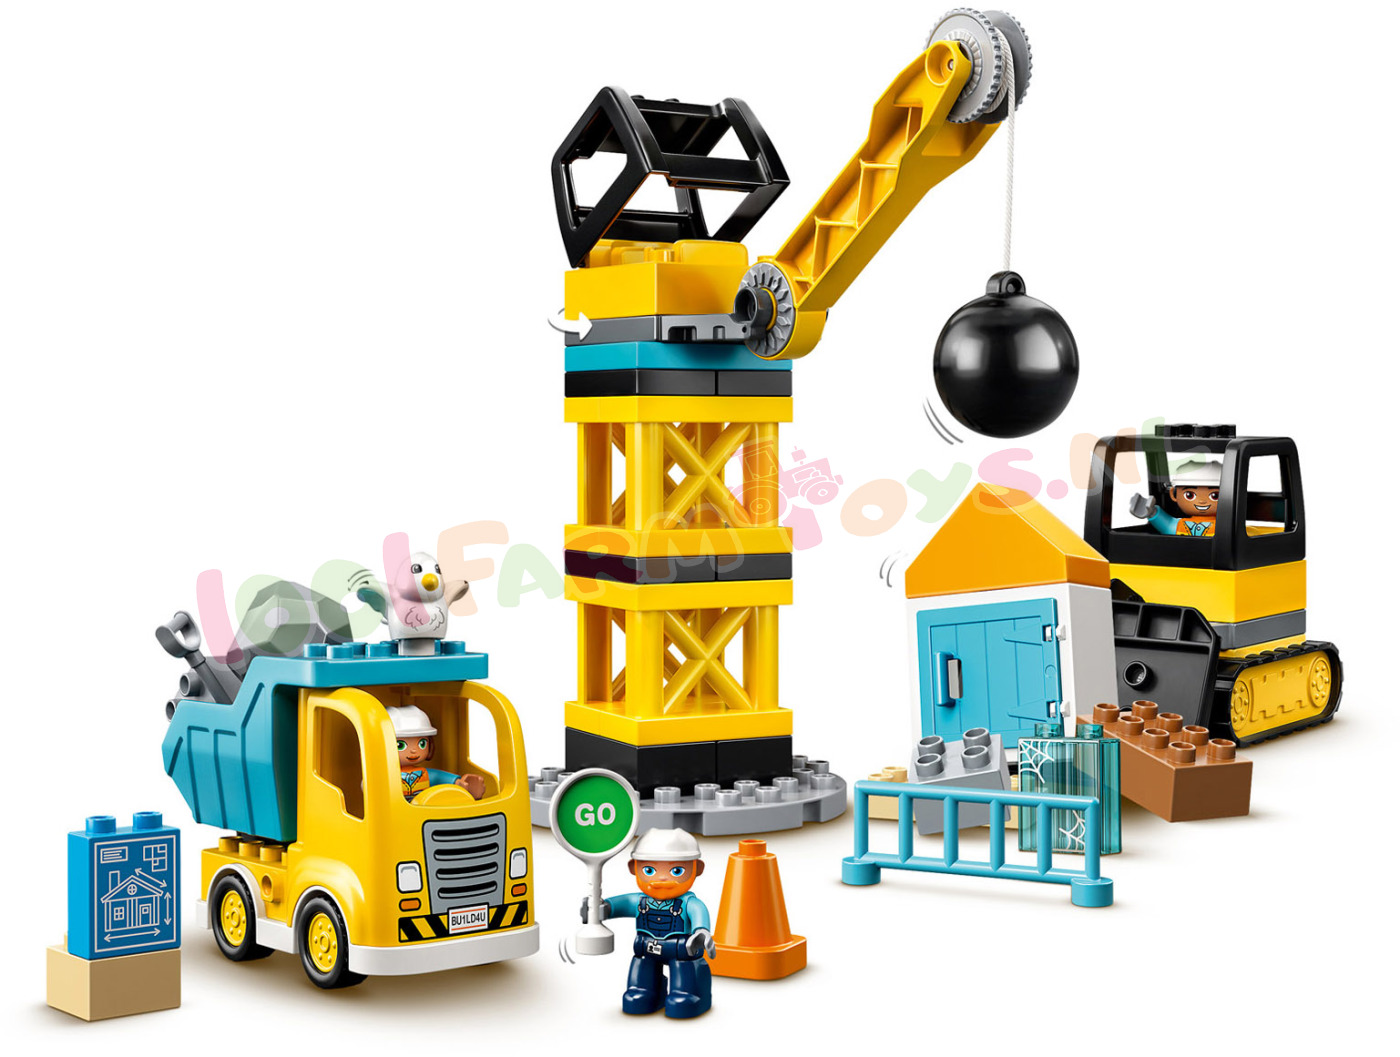 LEGO DUPLO Sloopkogel Afbraakwerken - - Uitverkocht Farm - 1001Farmtoys landbouwspeelgoed - Let product wordt niet meer geproduceerd door